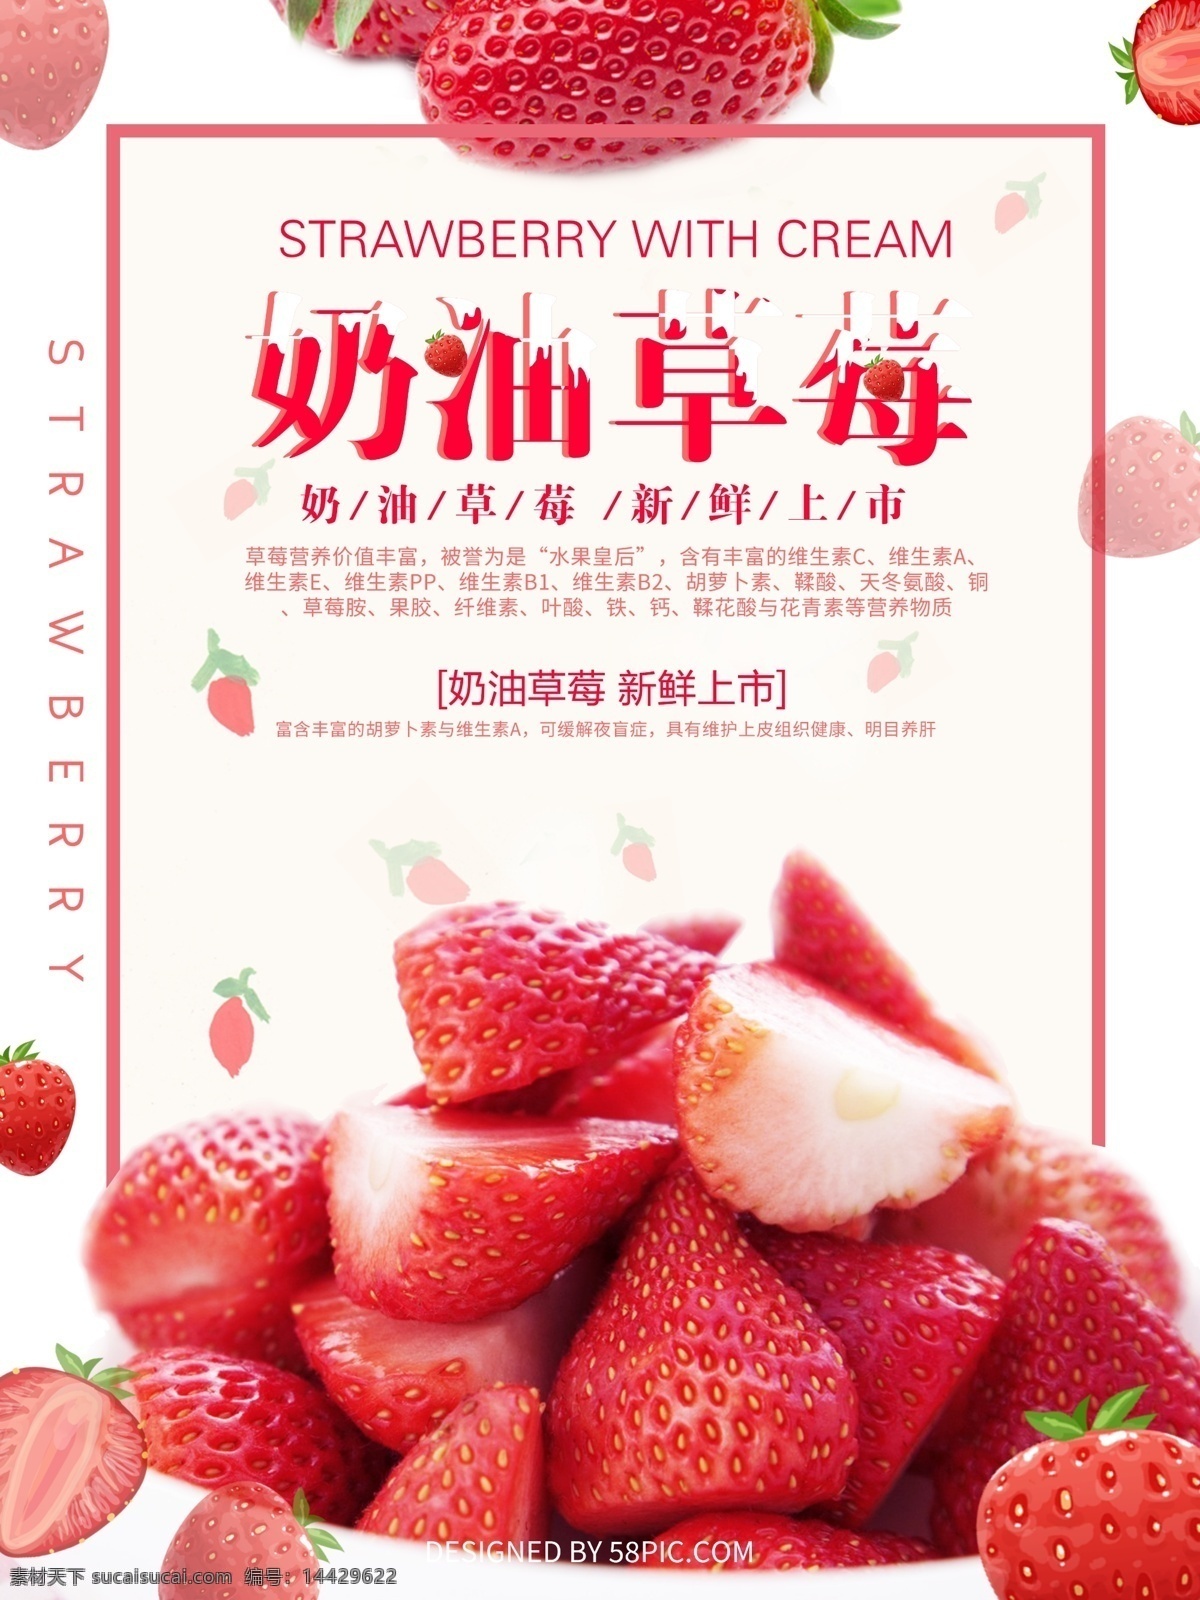 奶油 草莓 水果 美食 海报 促销海报 红色 奶油草莓 水果海报 新鲜上市